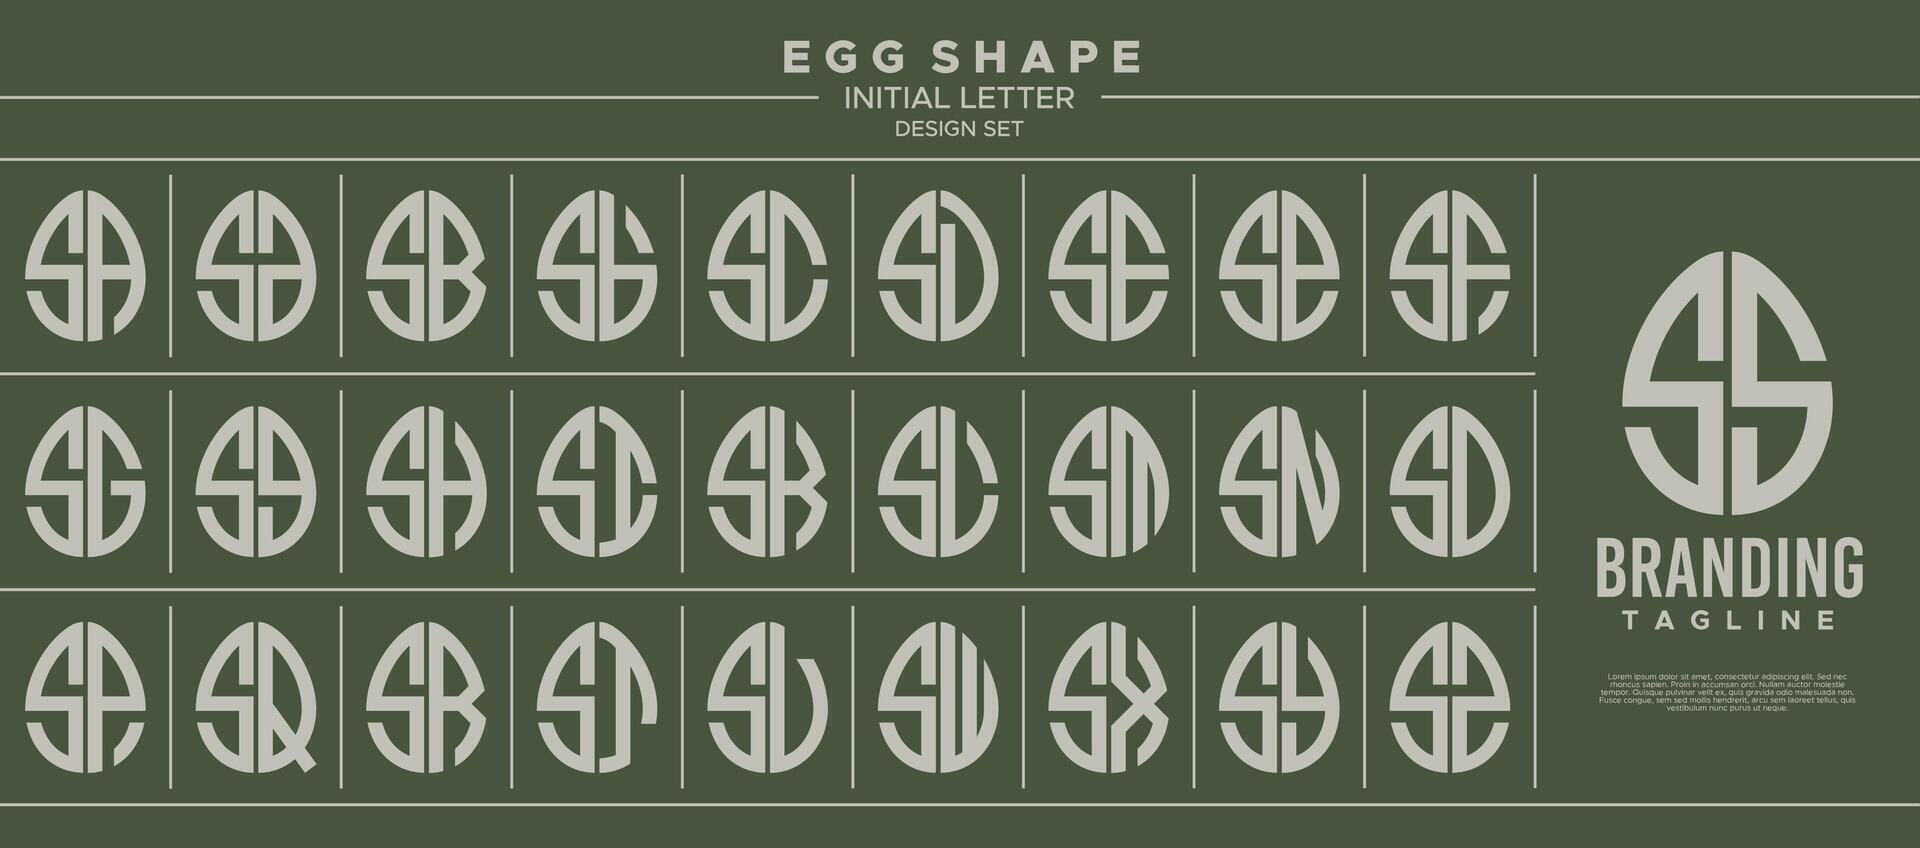 verzameling van voedsel ei vorm eerste brief s ss logo ontwerp vector